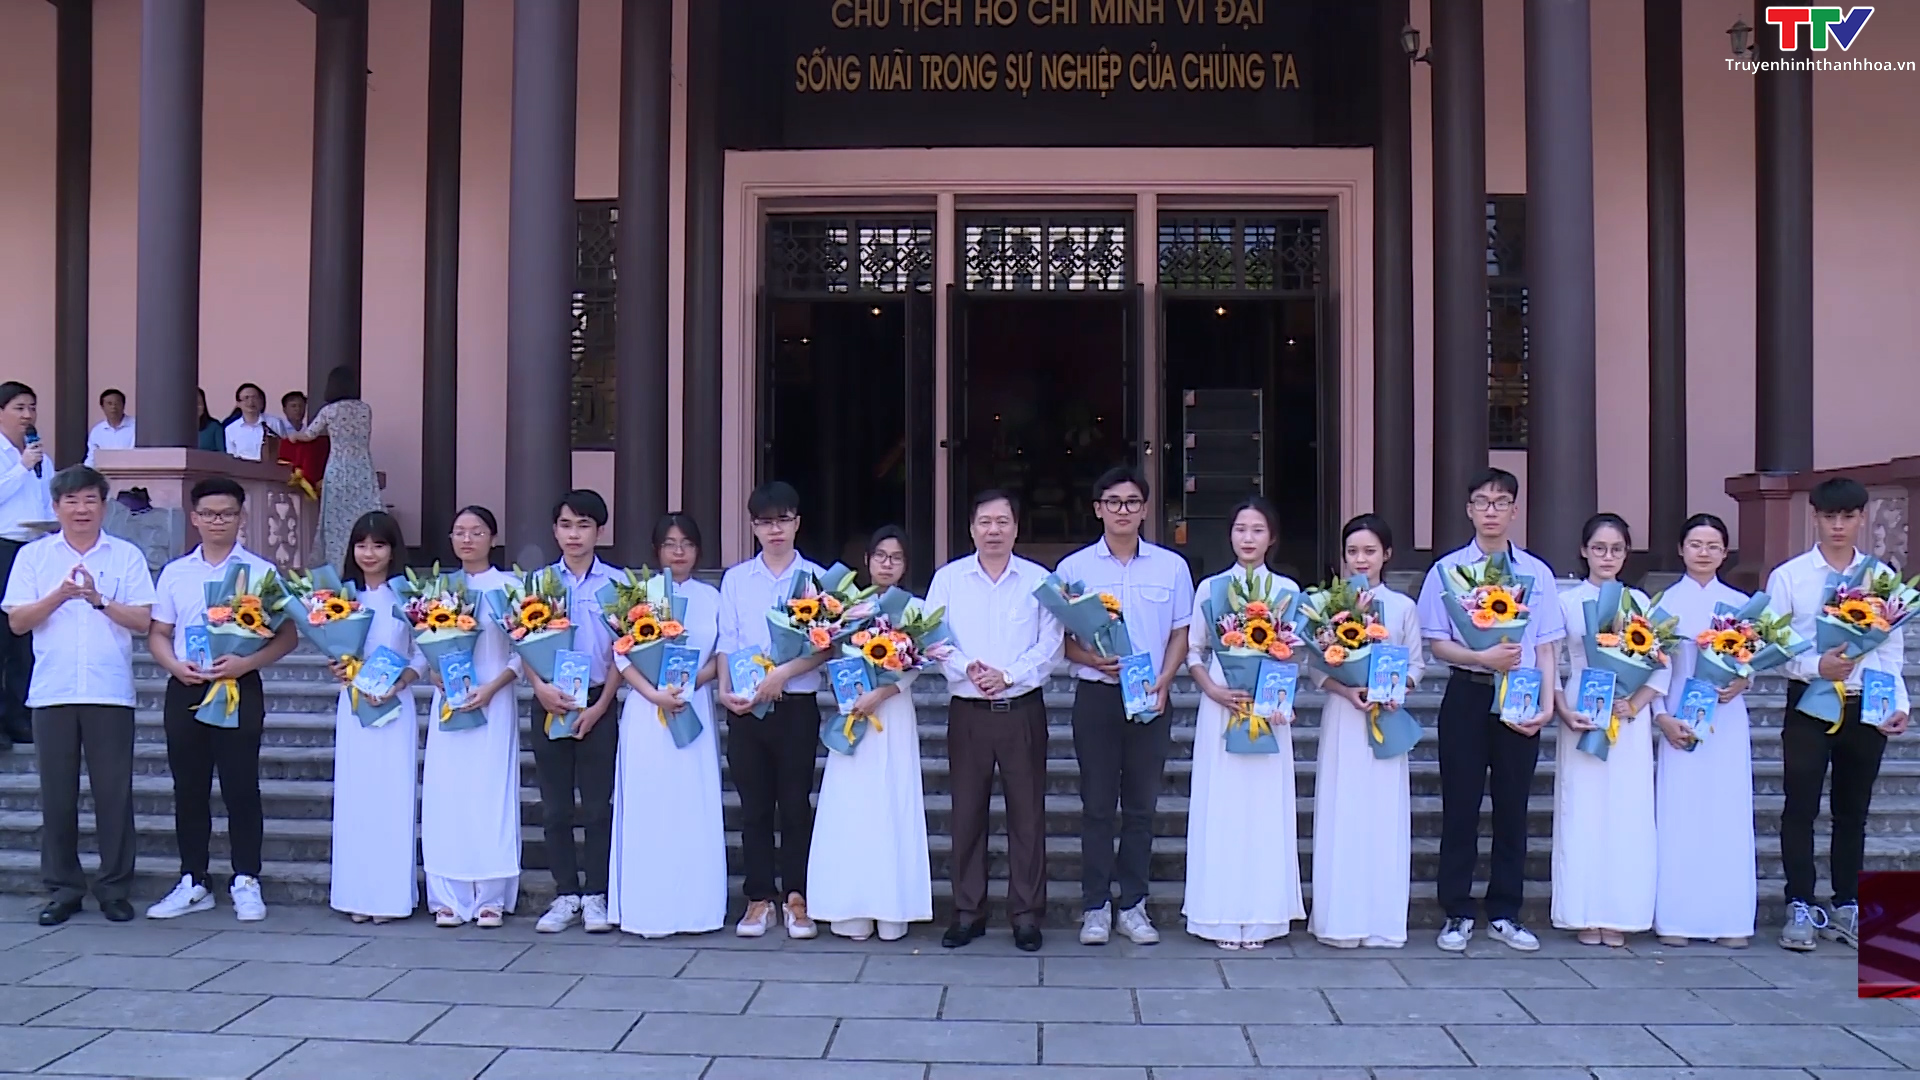 Đảng bộ trường THPT Nguyễn Trãi tổ chức lễ kết nạp Đảng tại Khu văn hóa tưởng niệm Chủ tịch Hồ Chí Minh - Ảnh 3.